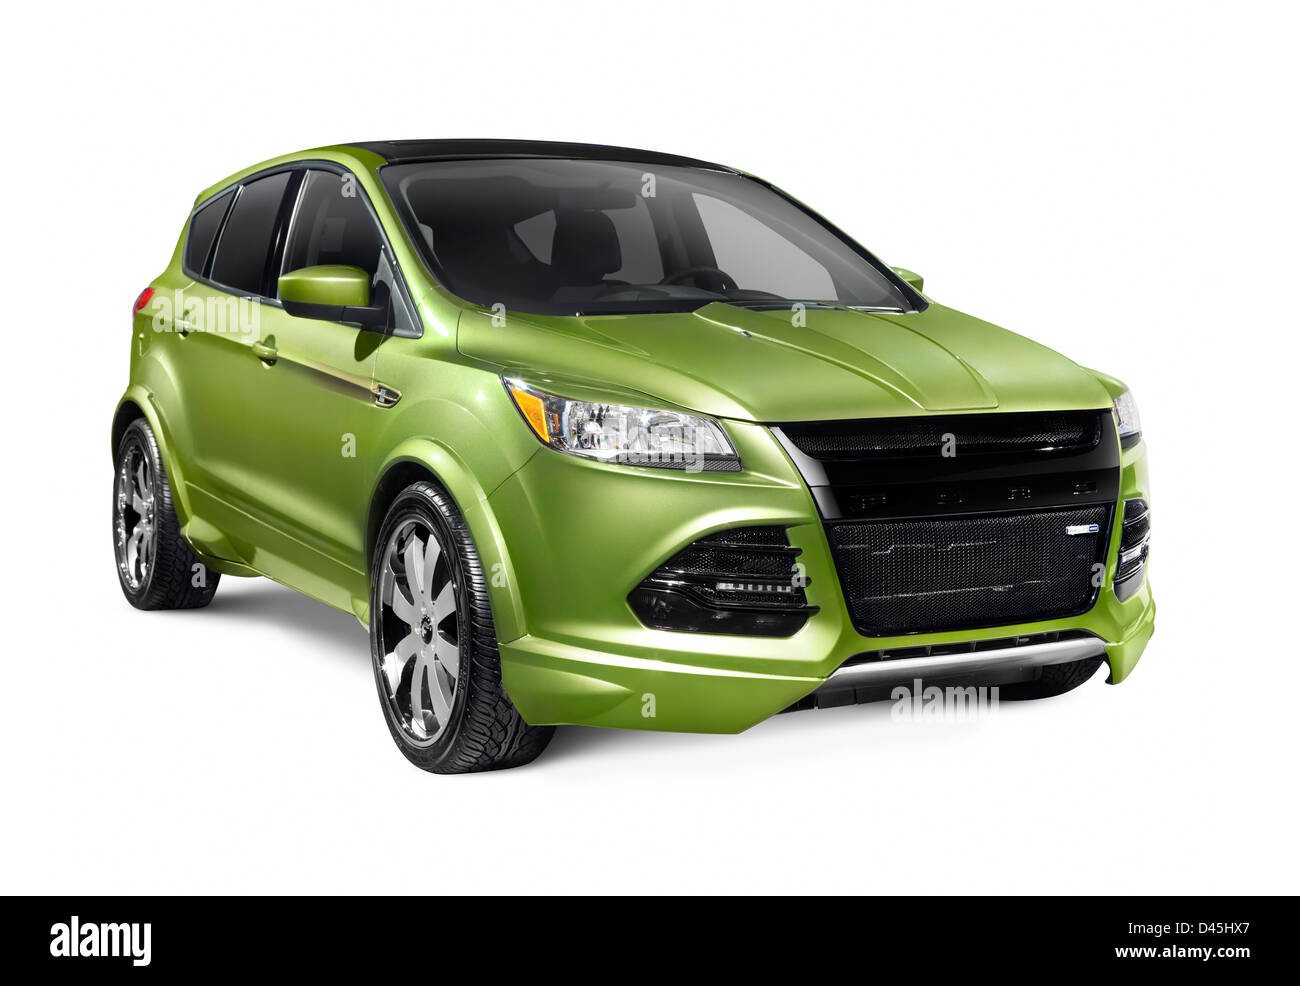 Führerschein erhältlich unter MaximImages.com - Green 2013 Ford Escape HPP SUV, isoliert auf weißem Hintergrund Stockfoto